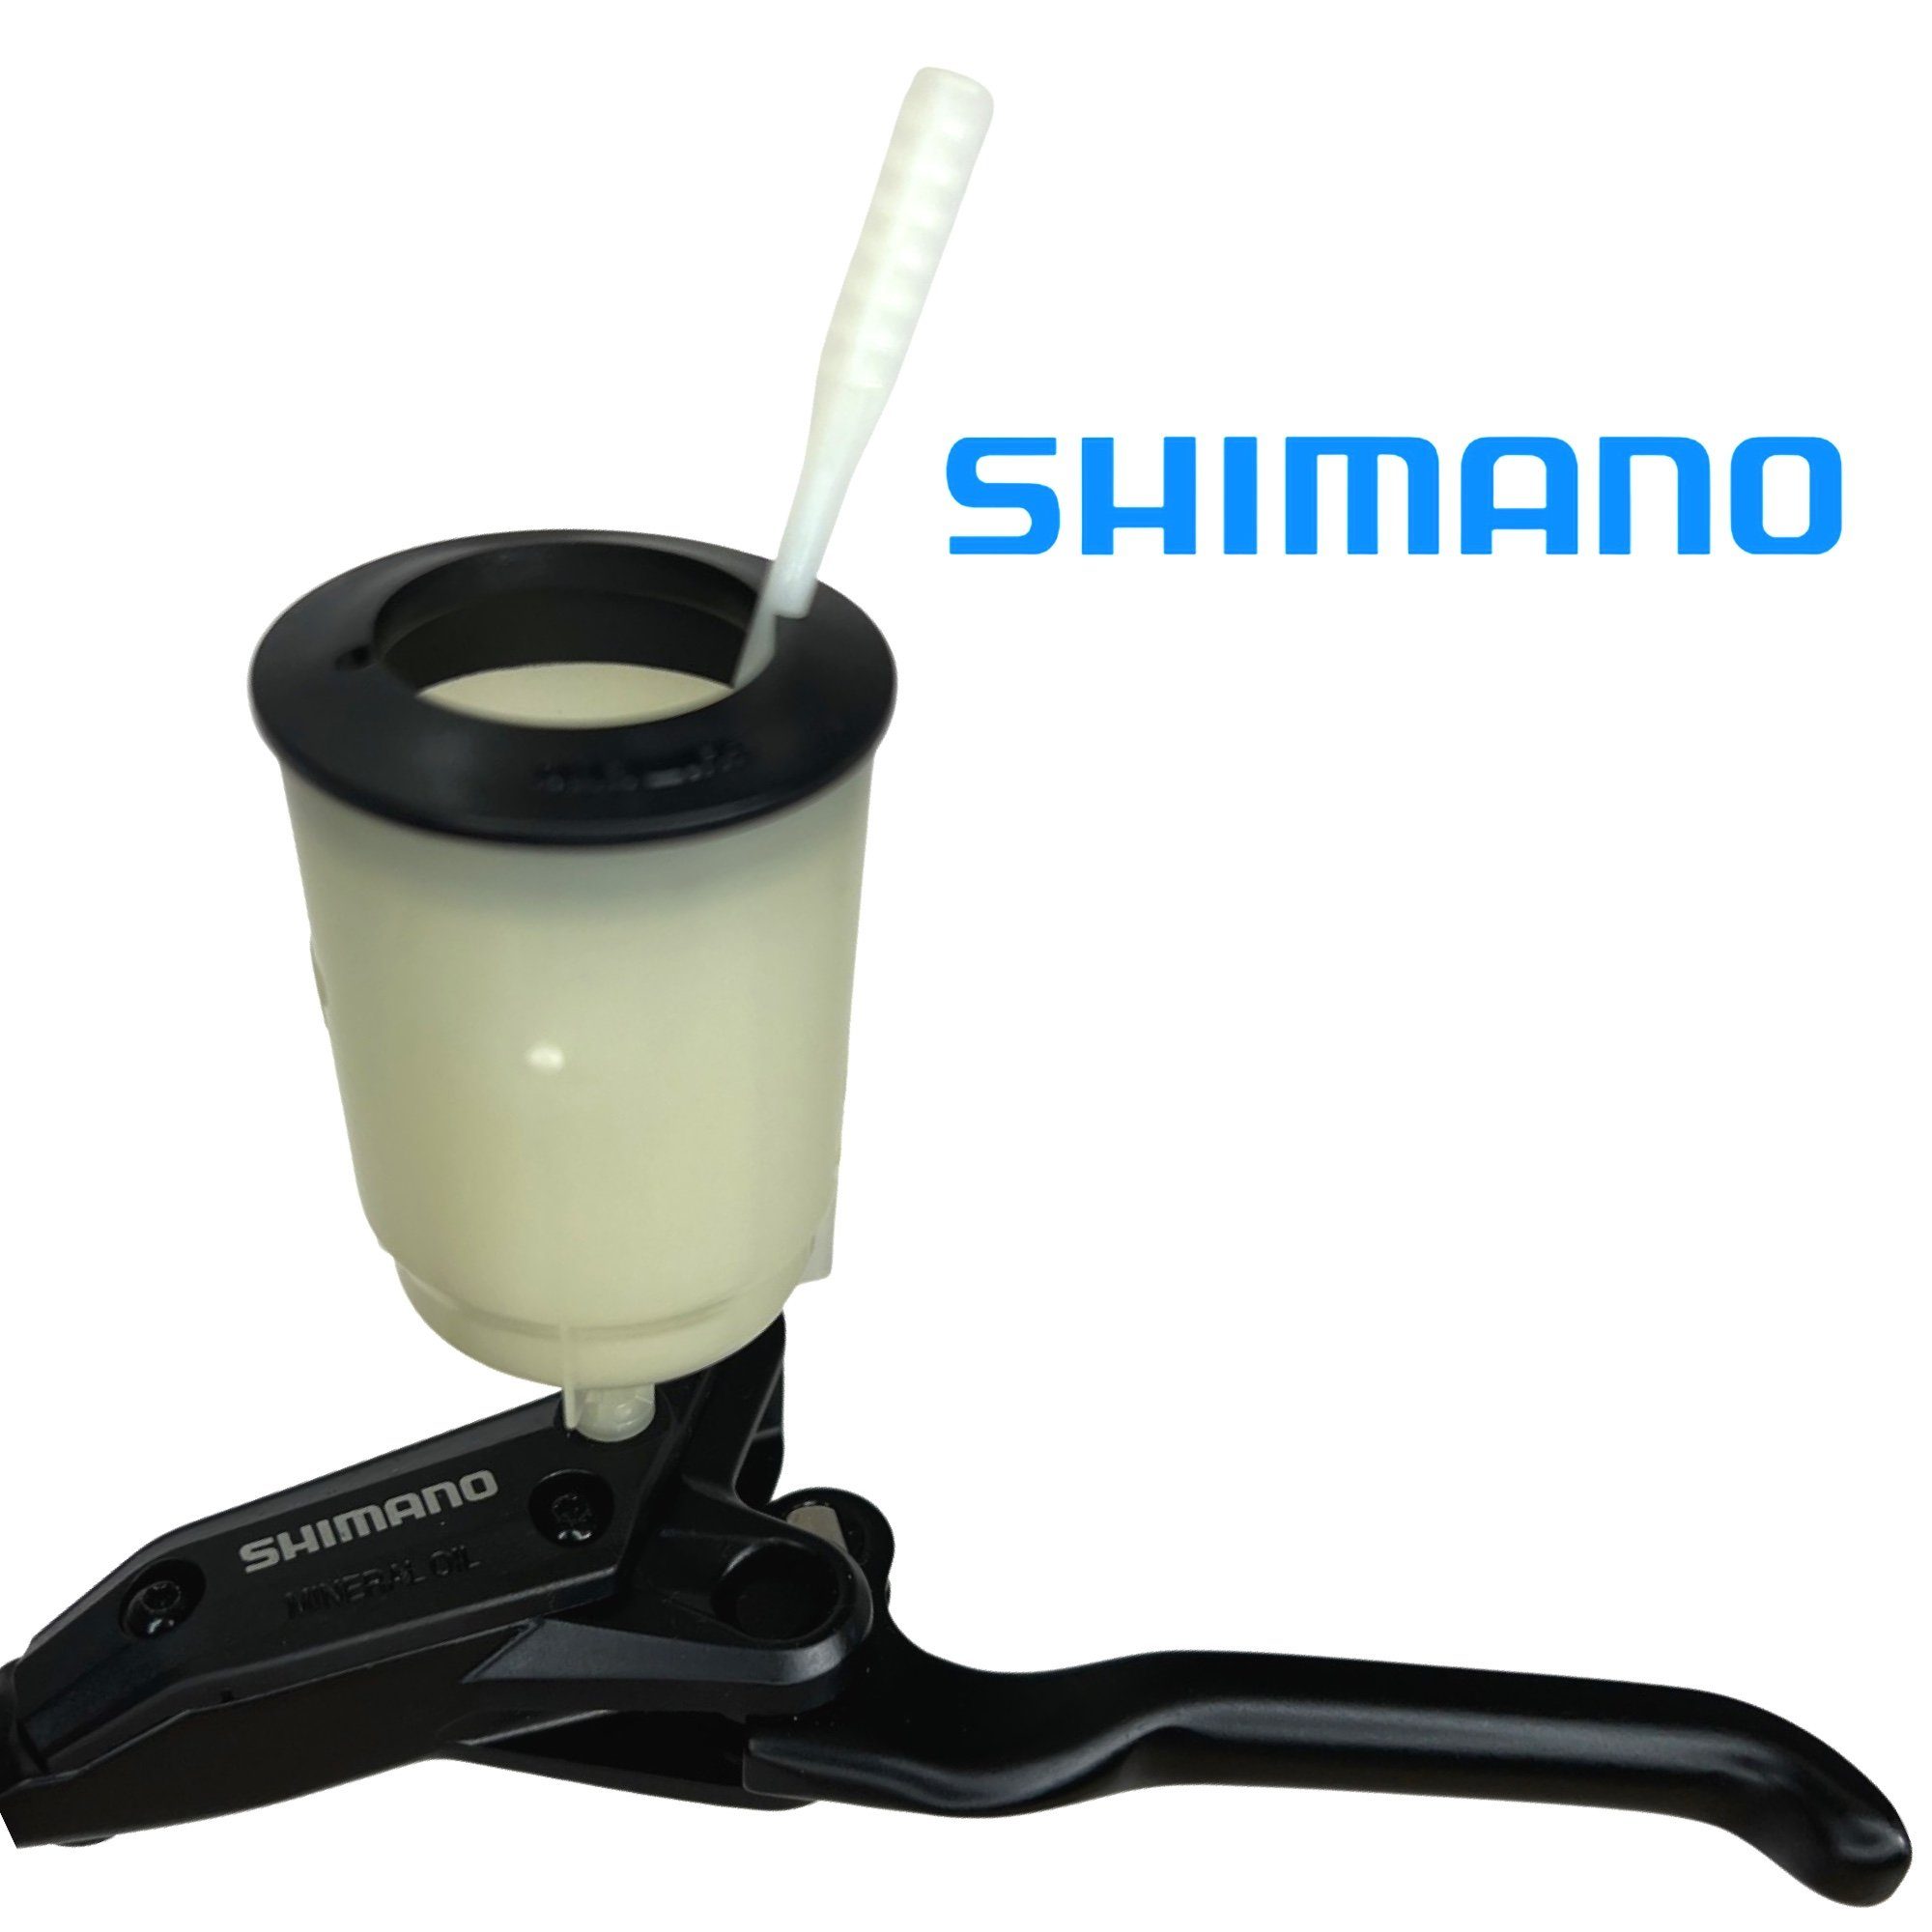 Shimano Fahrrad-Montageständer Entlüftung Befüllbecher Scheibenbremsen-Service Shimano Xtr Xt